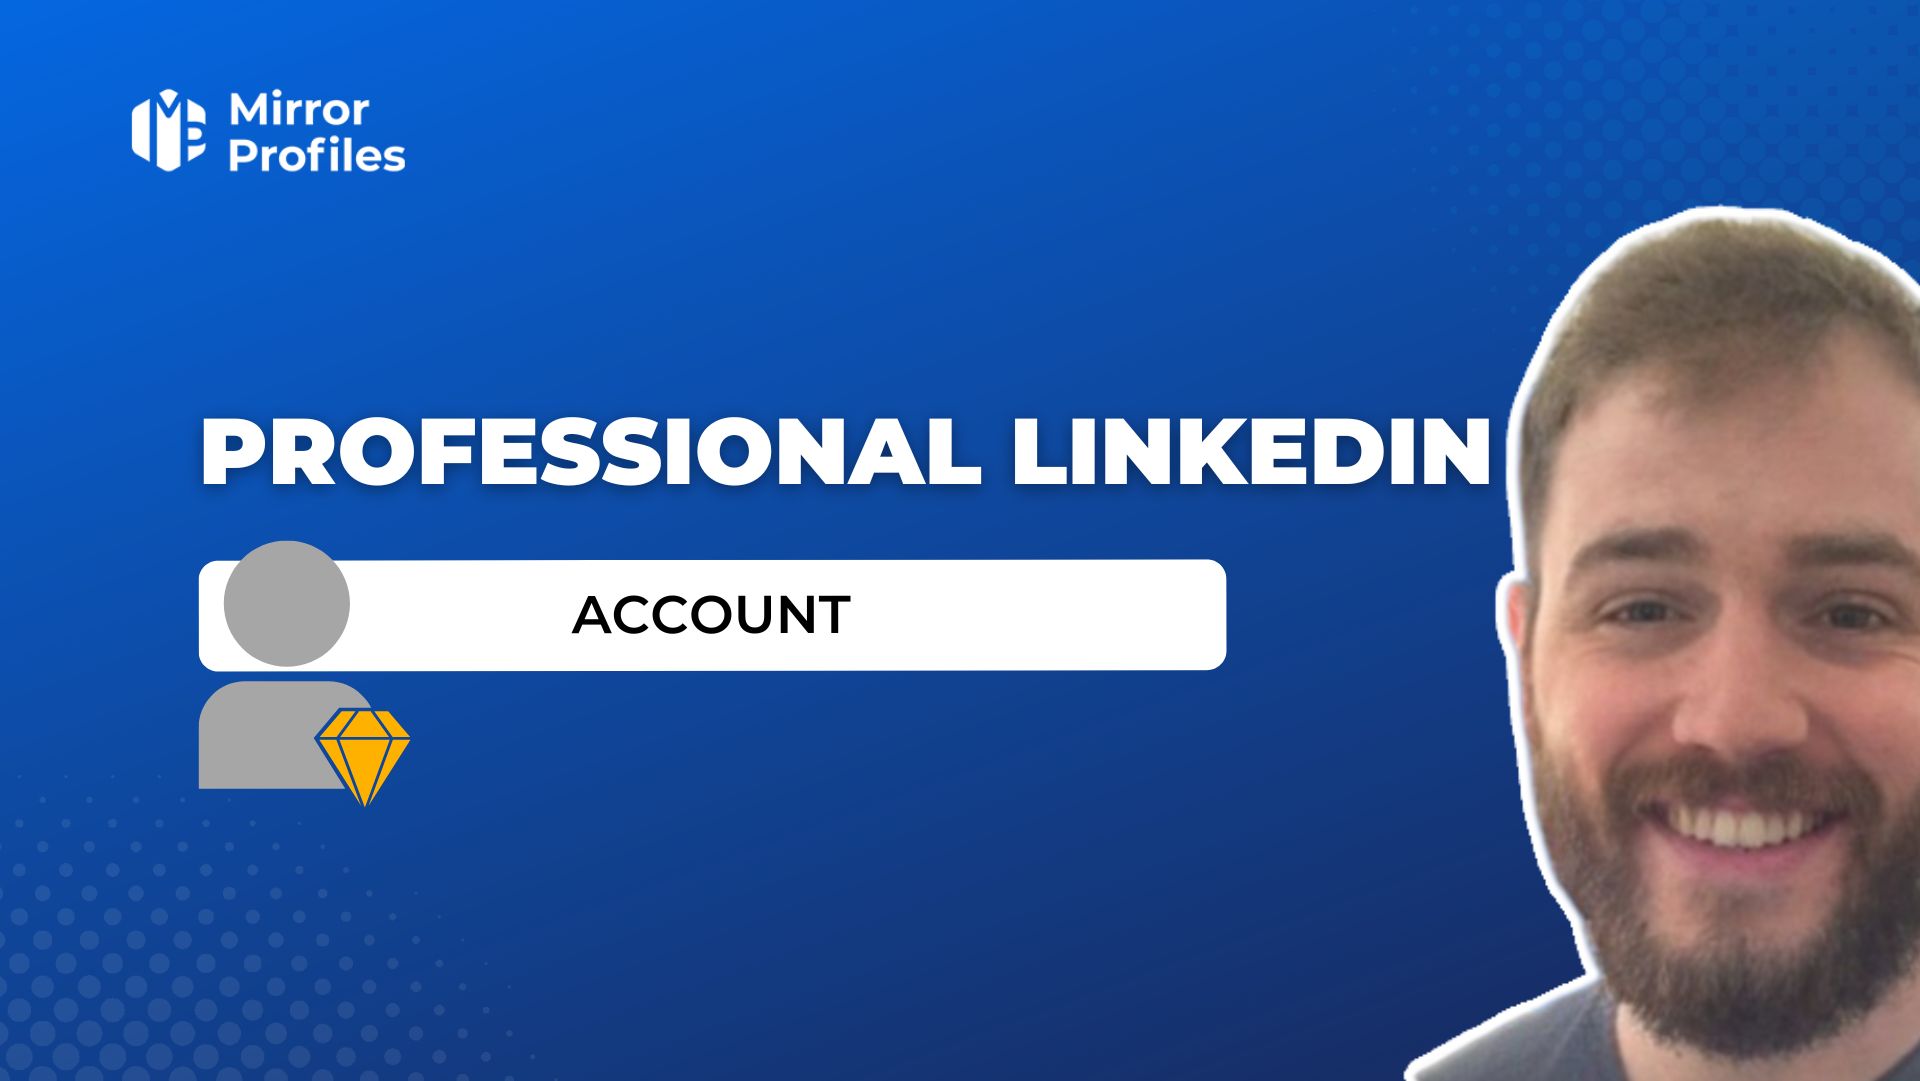 Professional Linkedin account